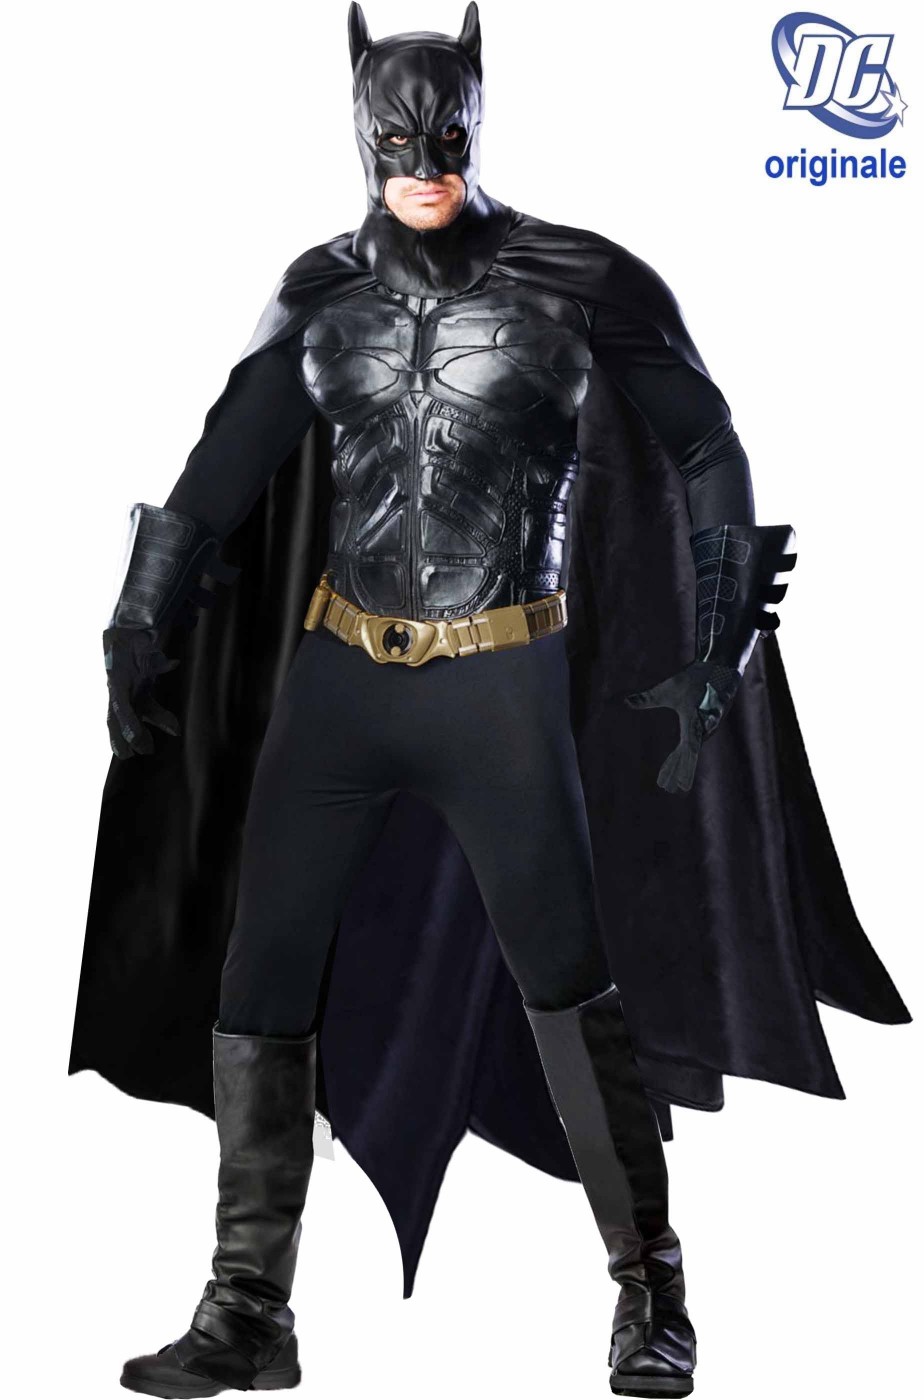 Costume Batman come quello del film